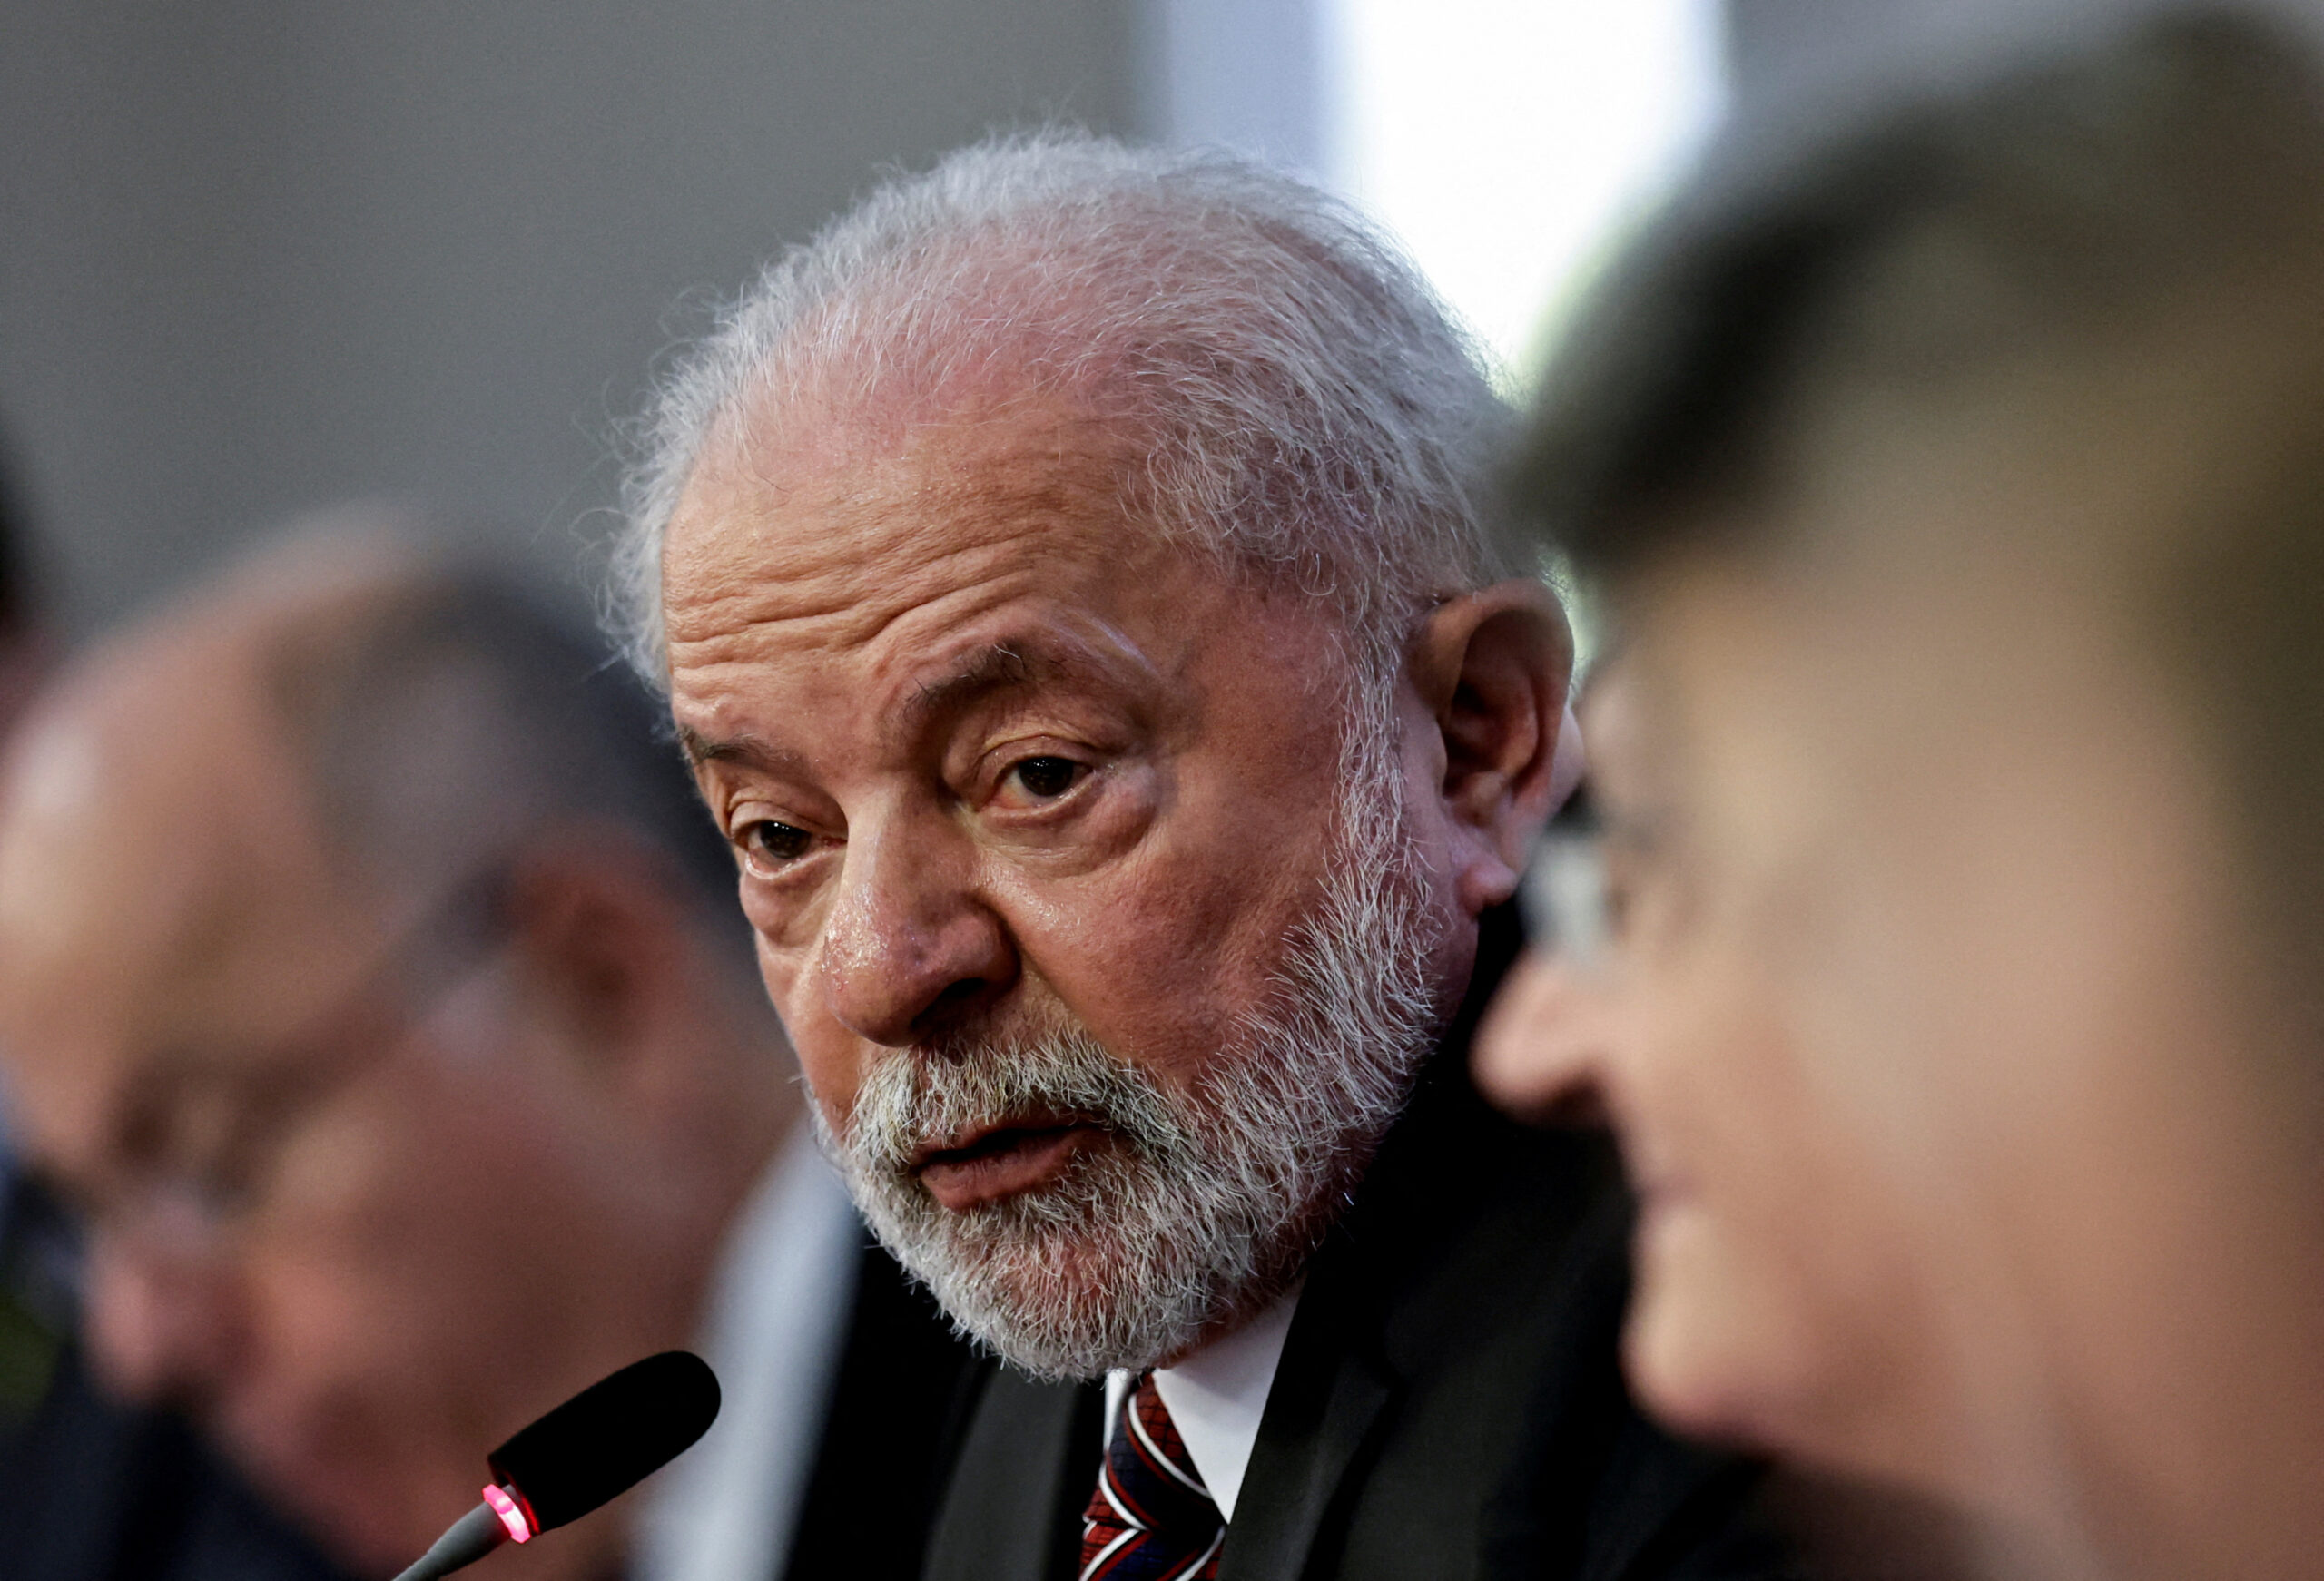 South American presidents led by Lula da Silva seek new shared agenda